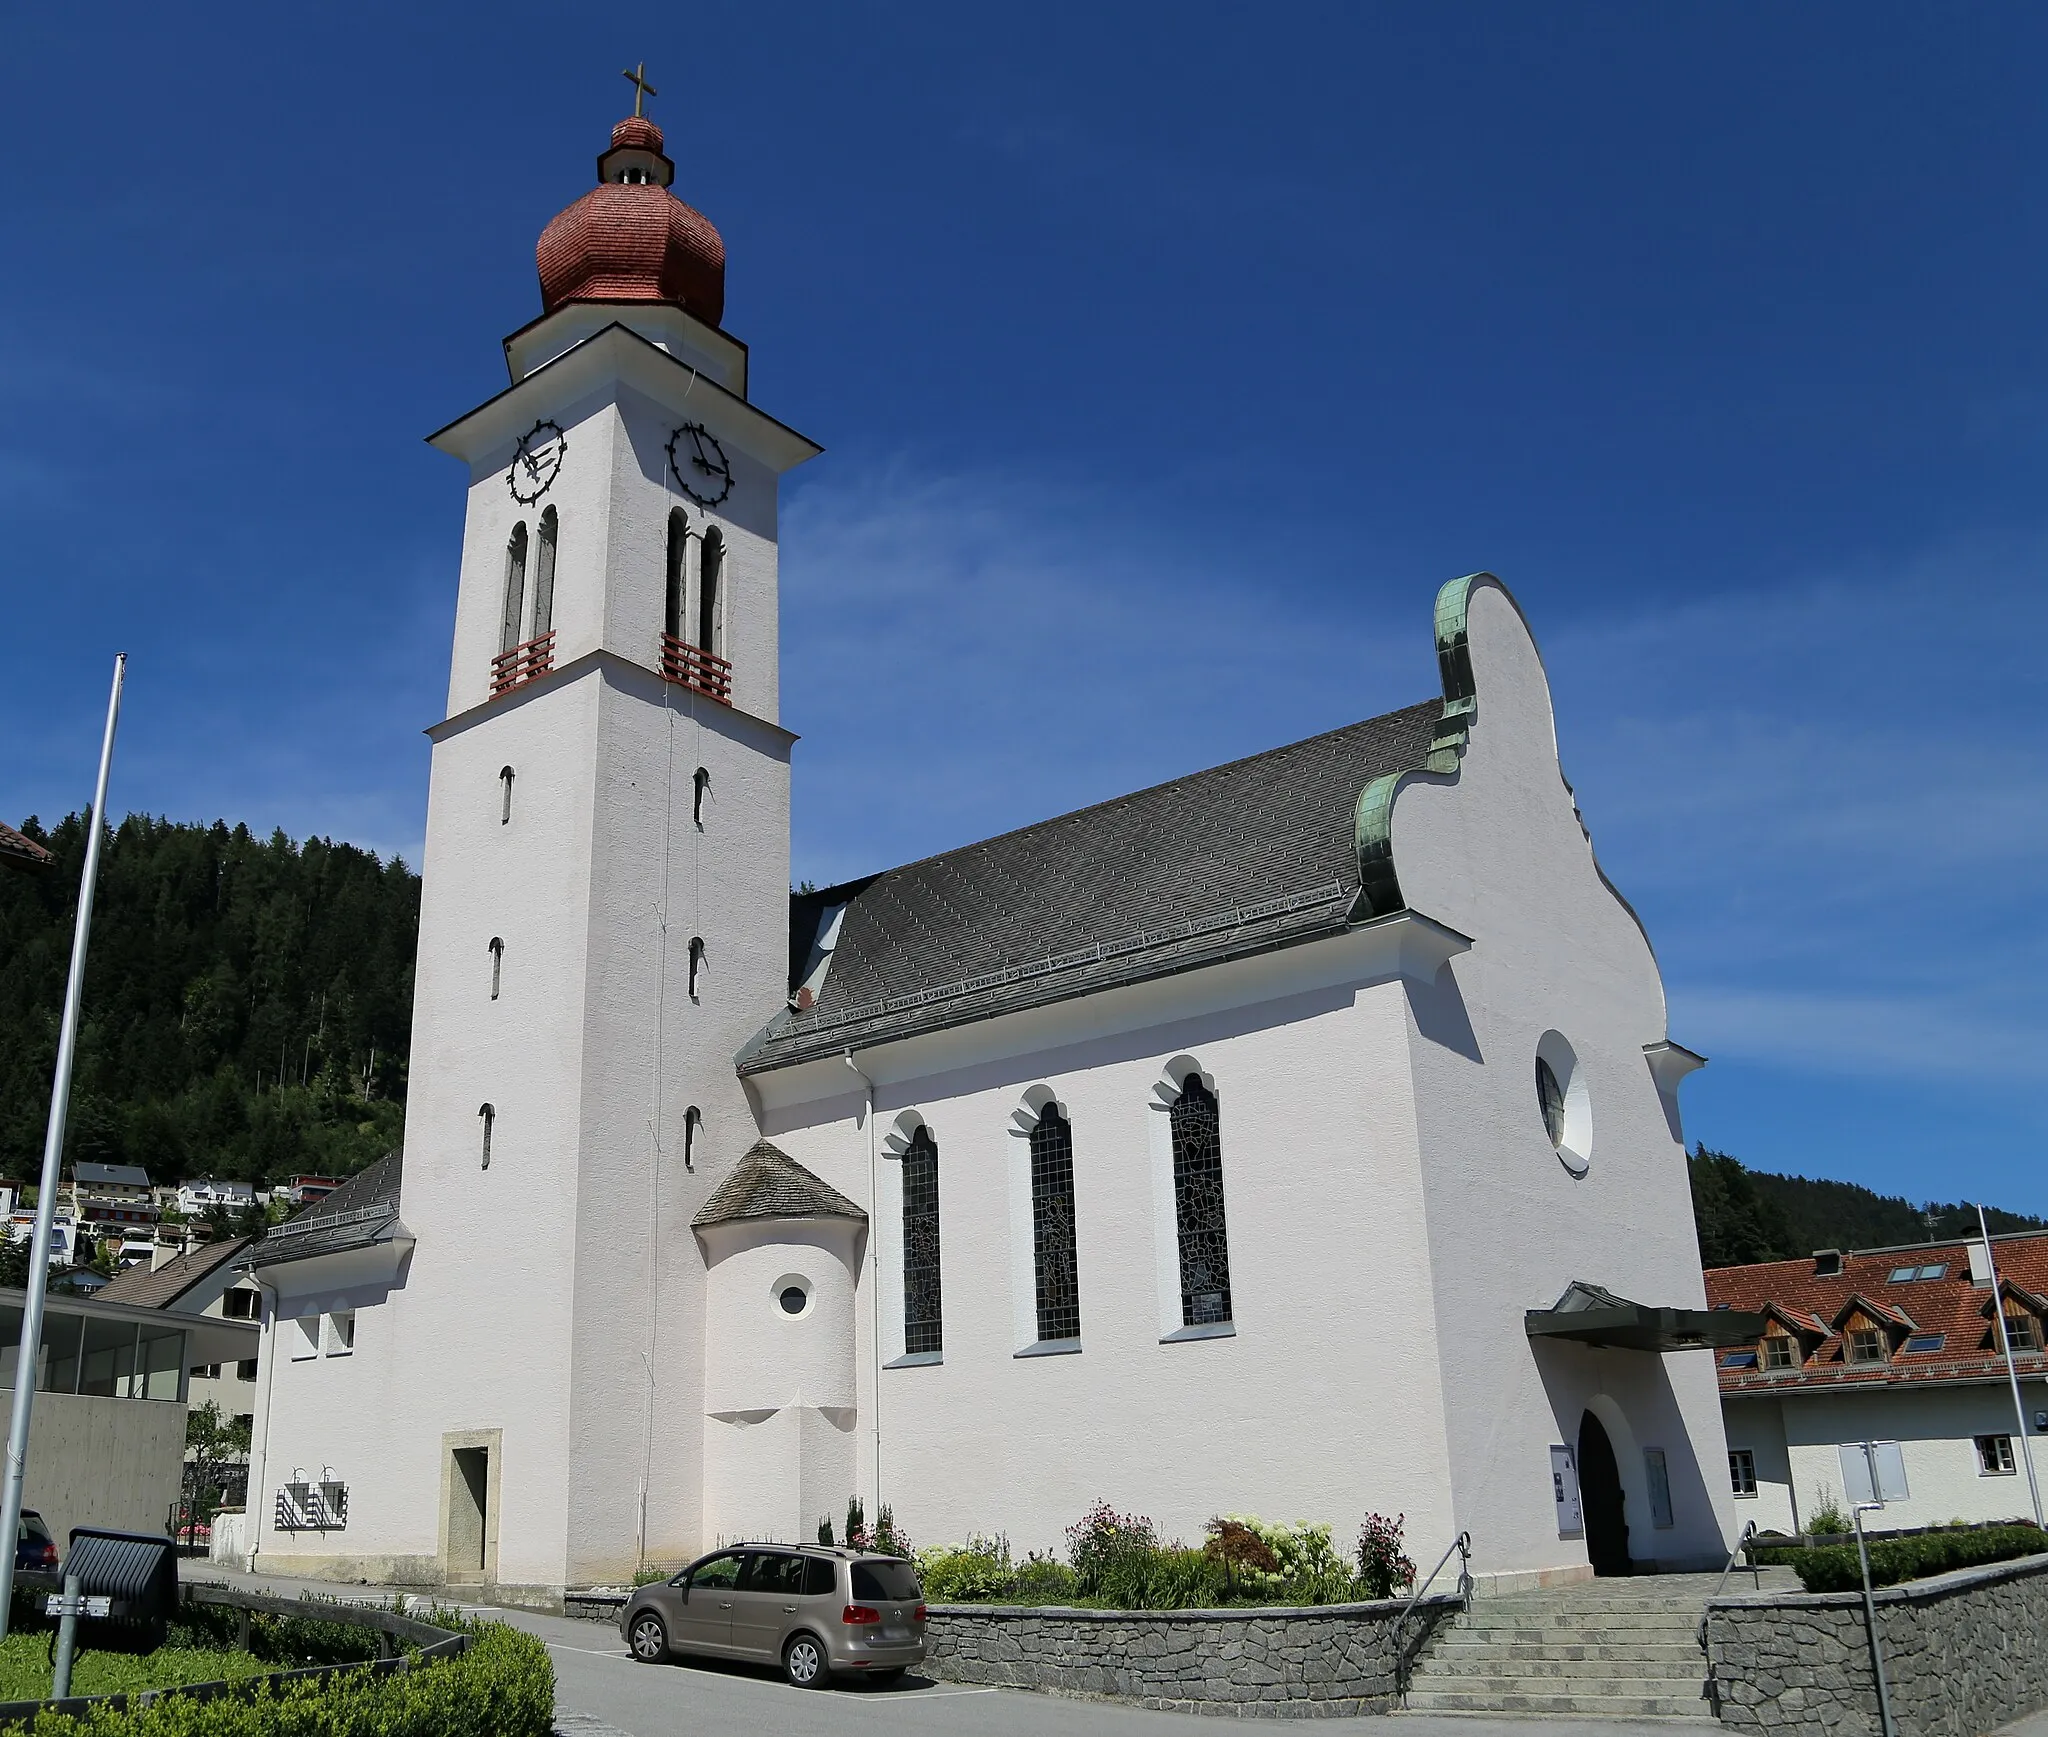 Bilde av Tirol